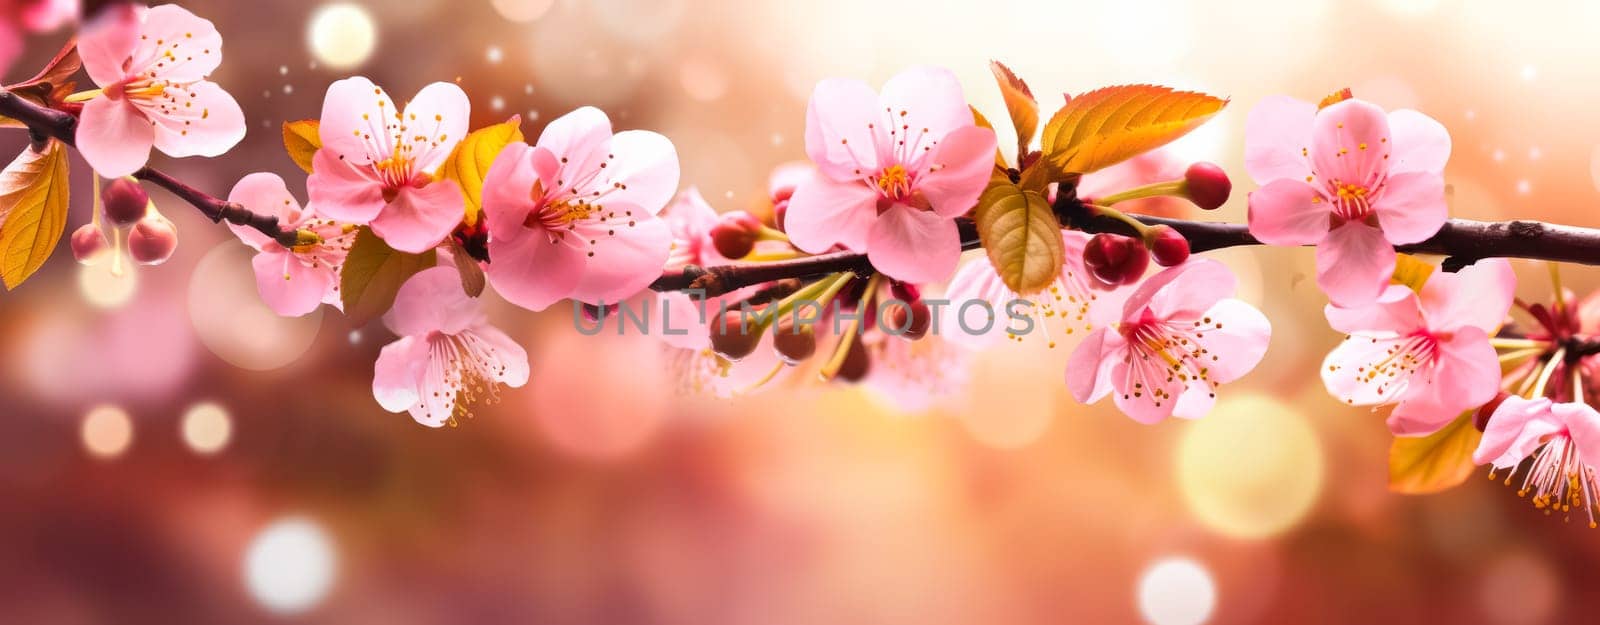 Exquisite pink peach blossoms flourishing in a vibrant garden by Alla_Morozova93